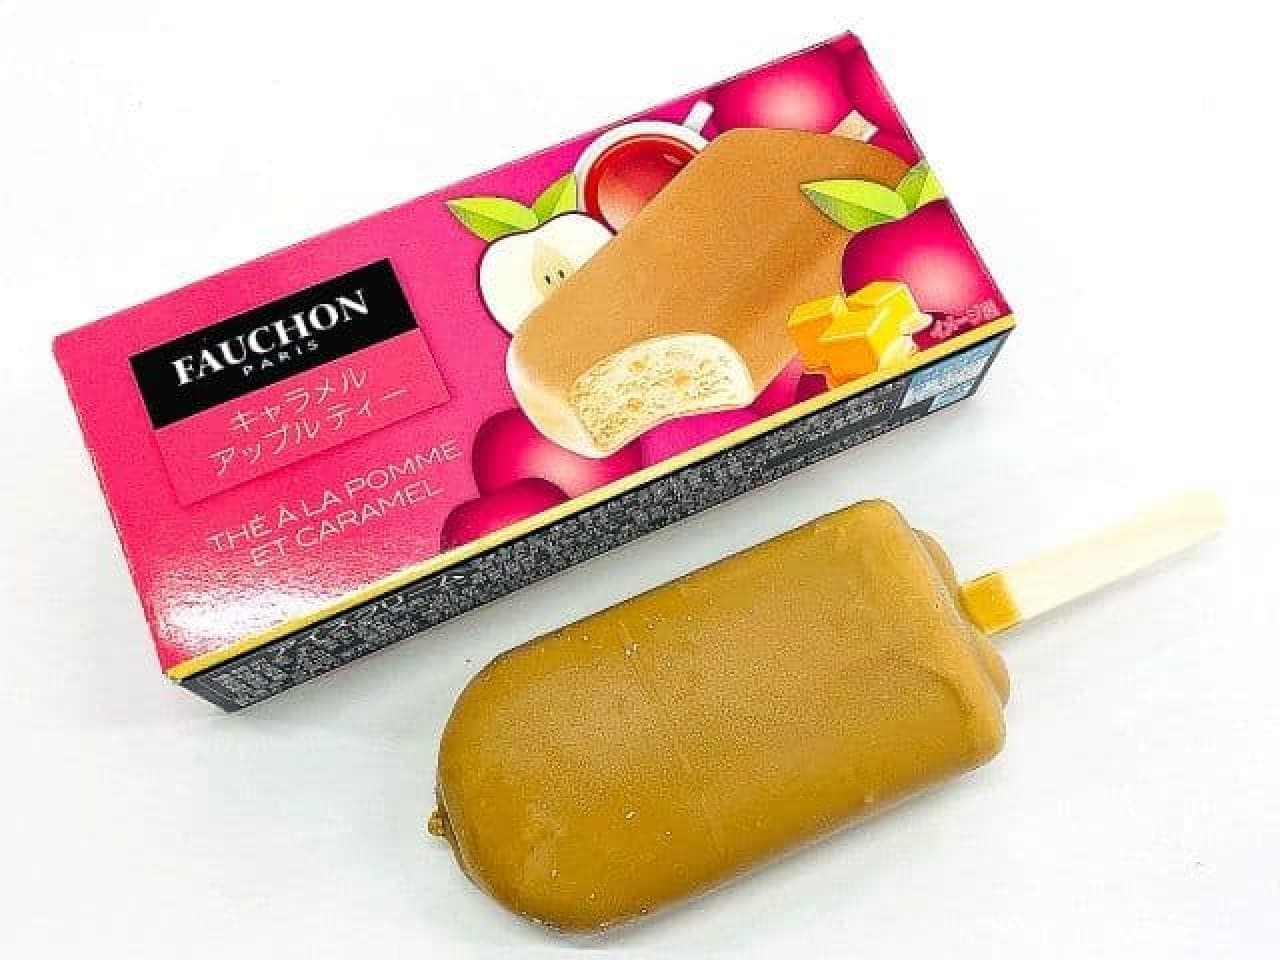 7-Eleven "Fauchon Caramel Apple Tea Bar